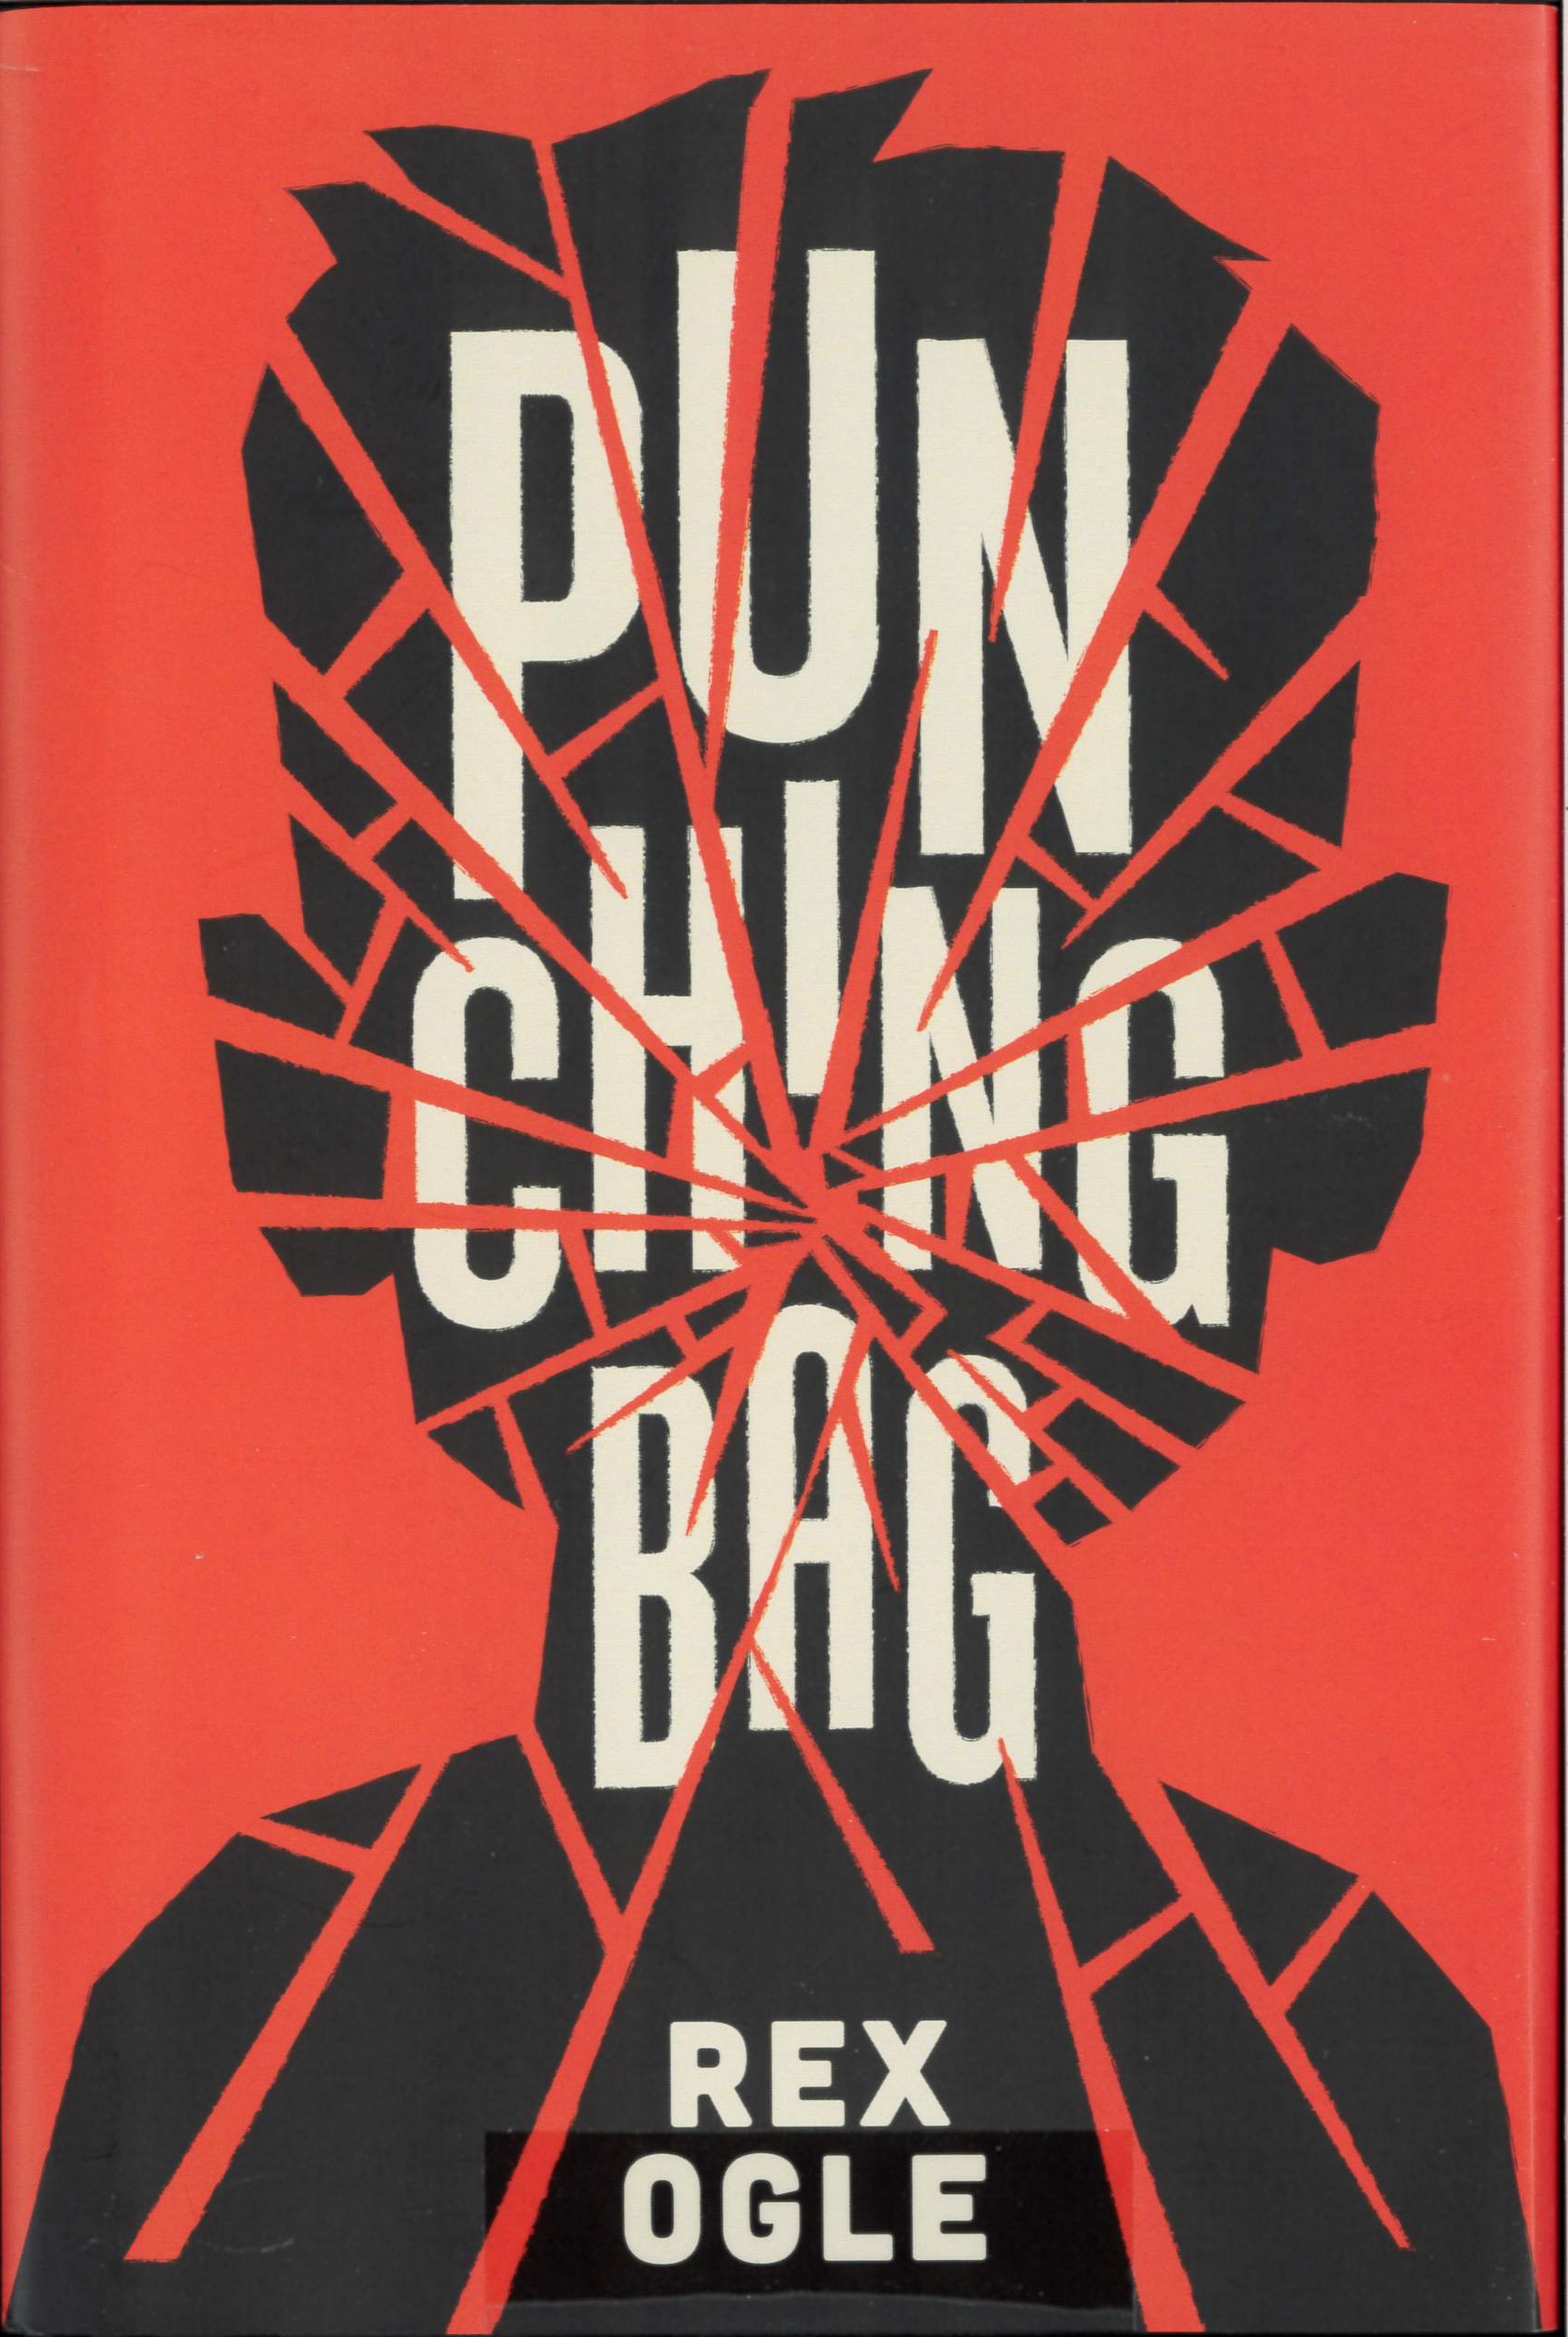 Punching bag /